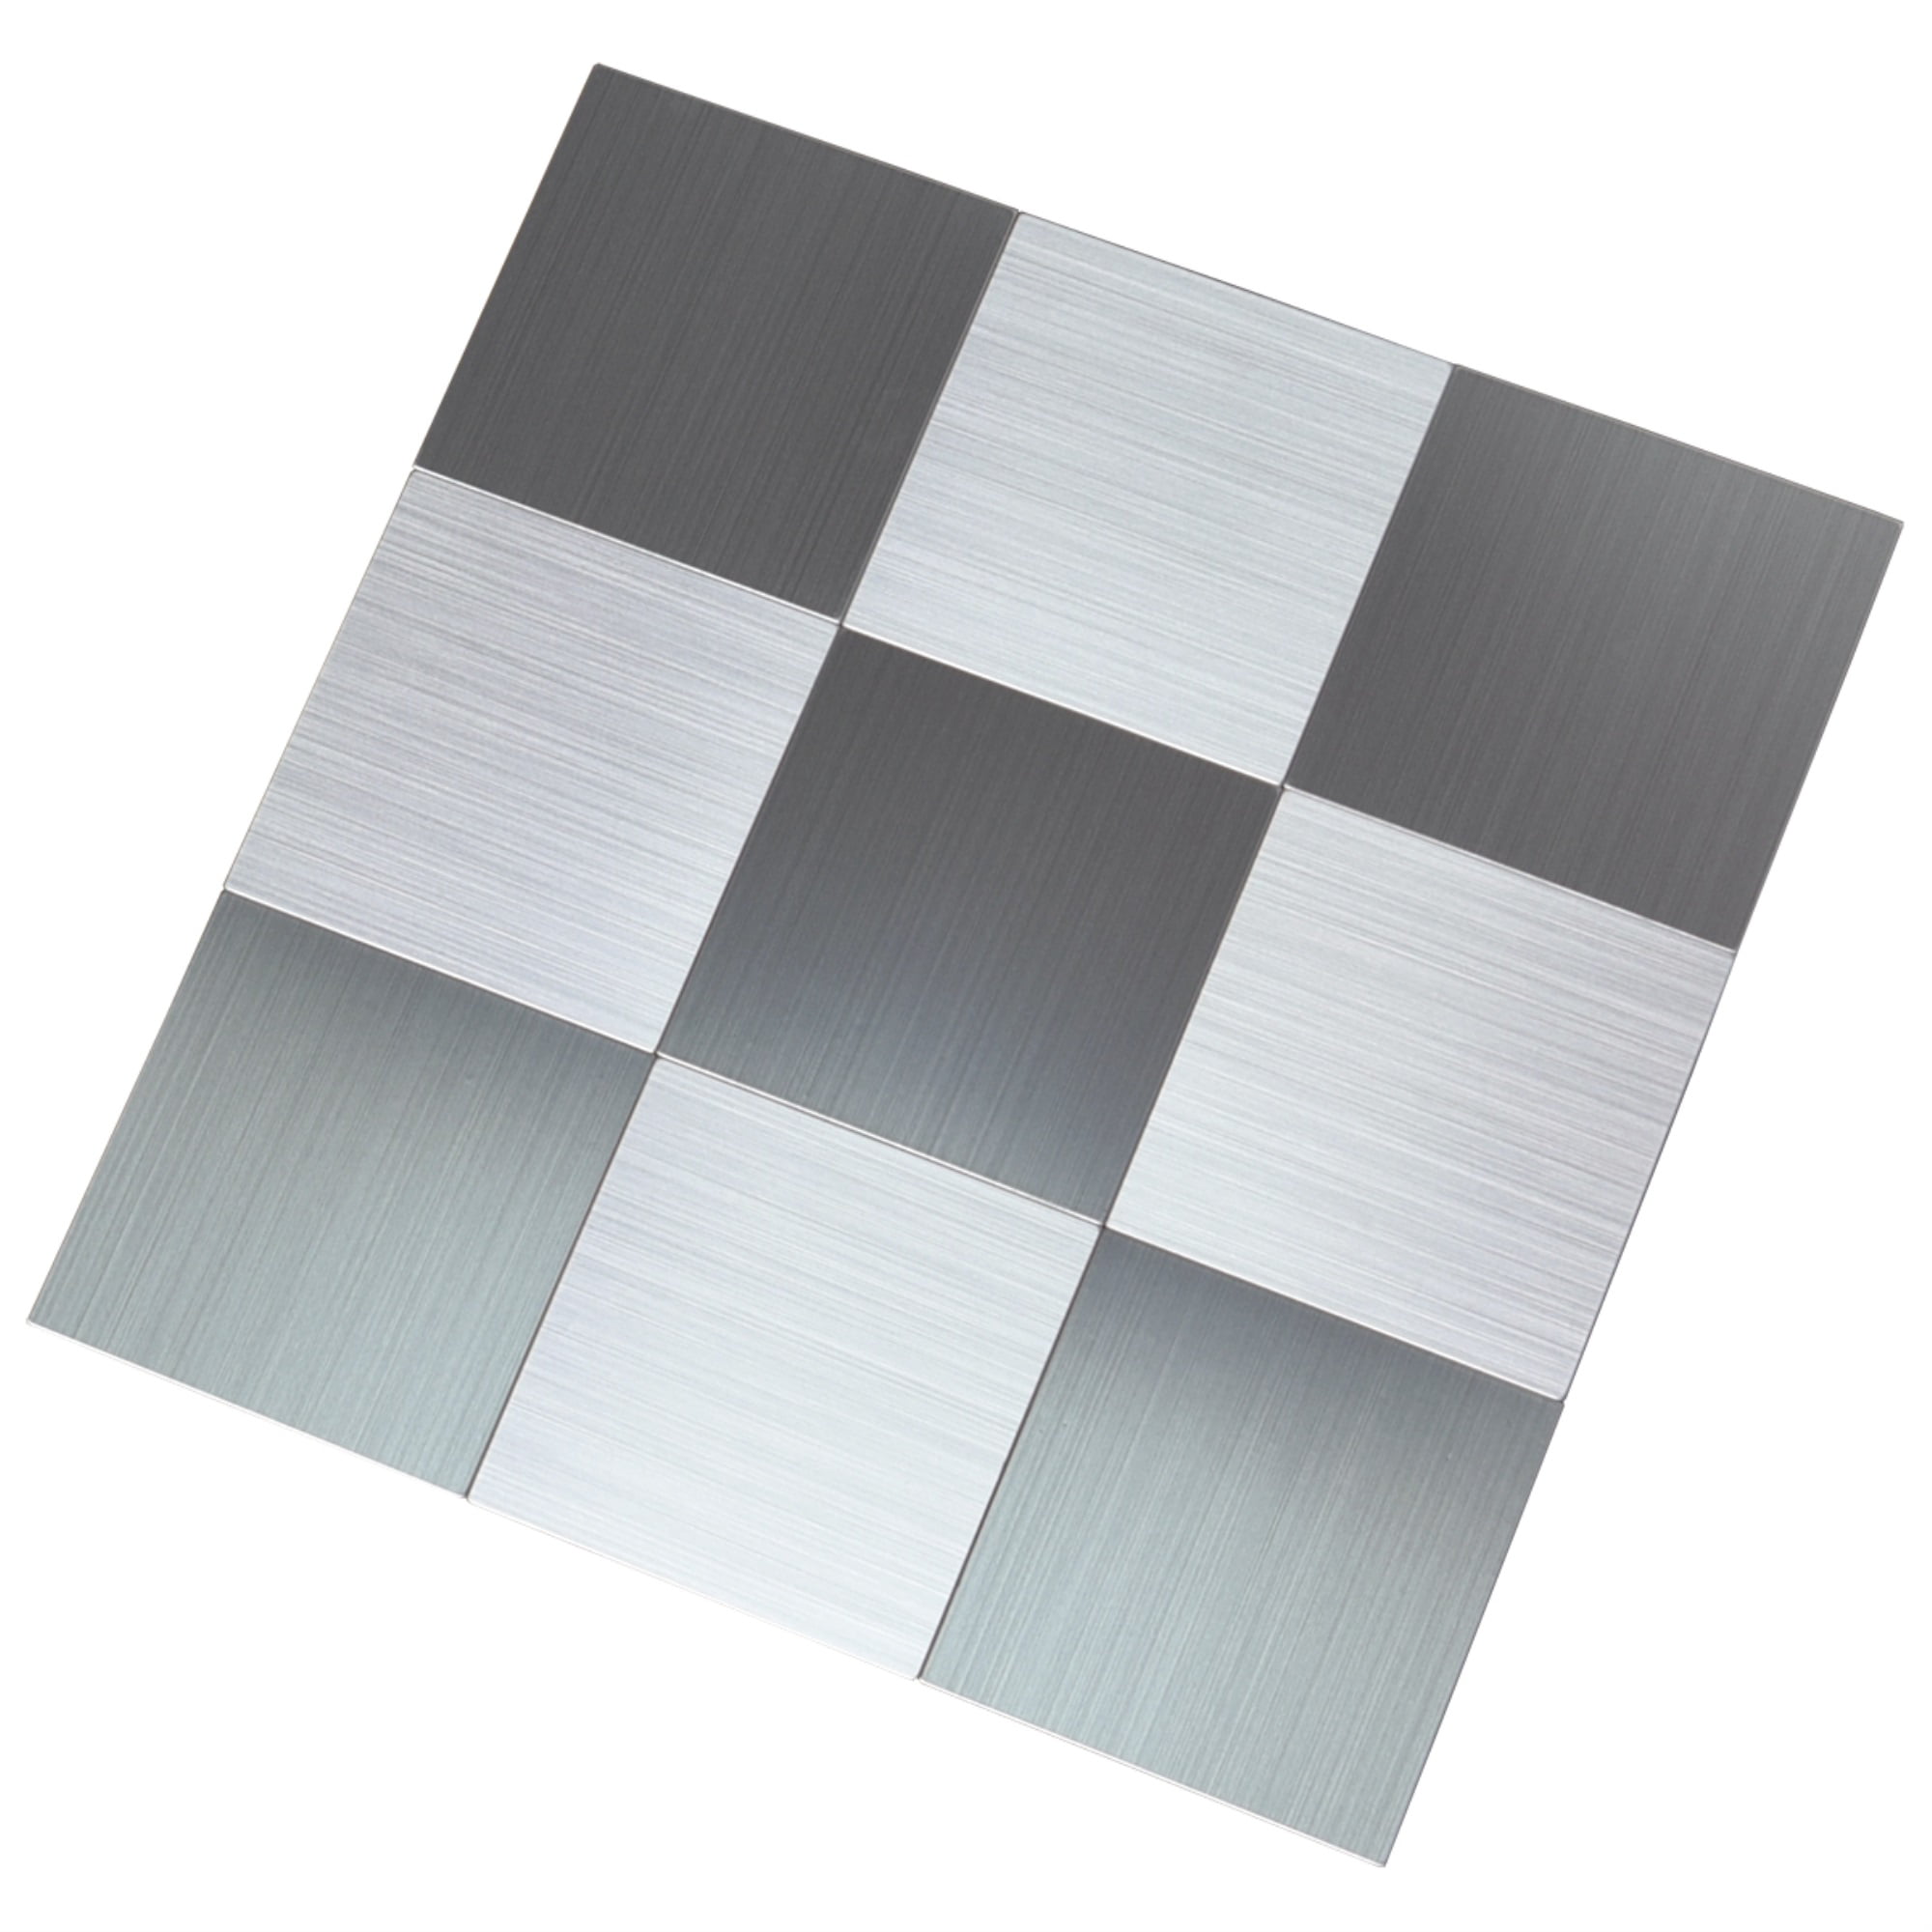 Backsplash Tile for Kitchen Peel and Stick 11.85''x11.85'', 5 Pieces Stainless Steel Metal Backsplash Tiles in Brushed Black Silver 